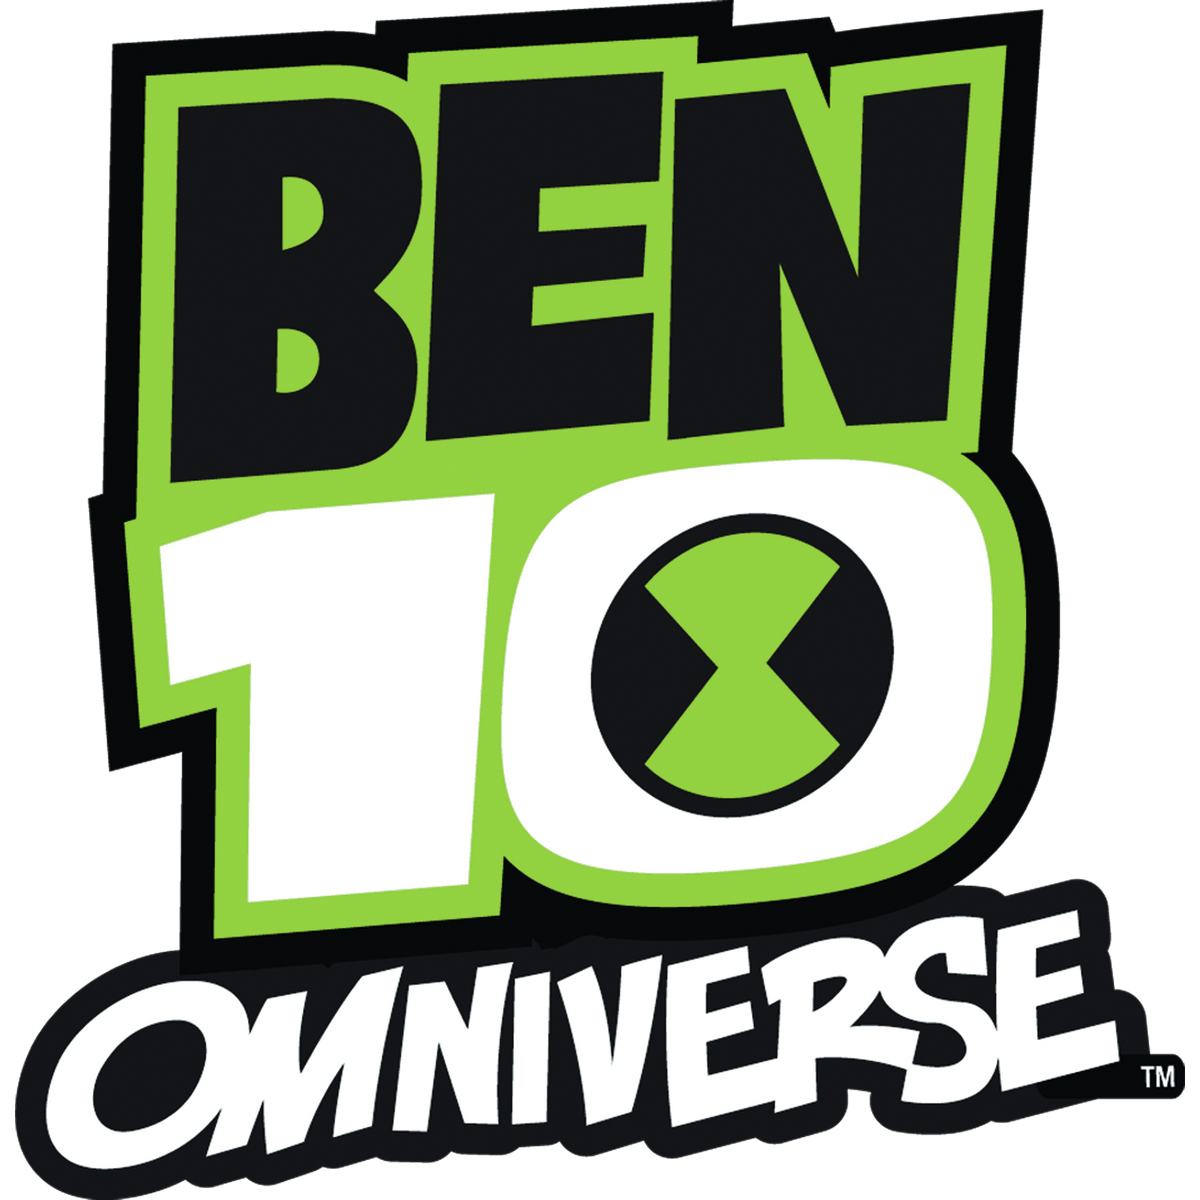 Free: Omnitrix Original Ben 10 Wiki Fandom Powered By Wikia - Ben